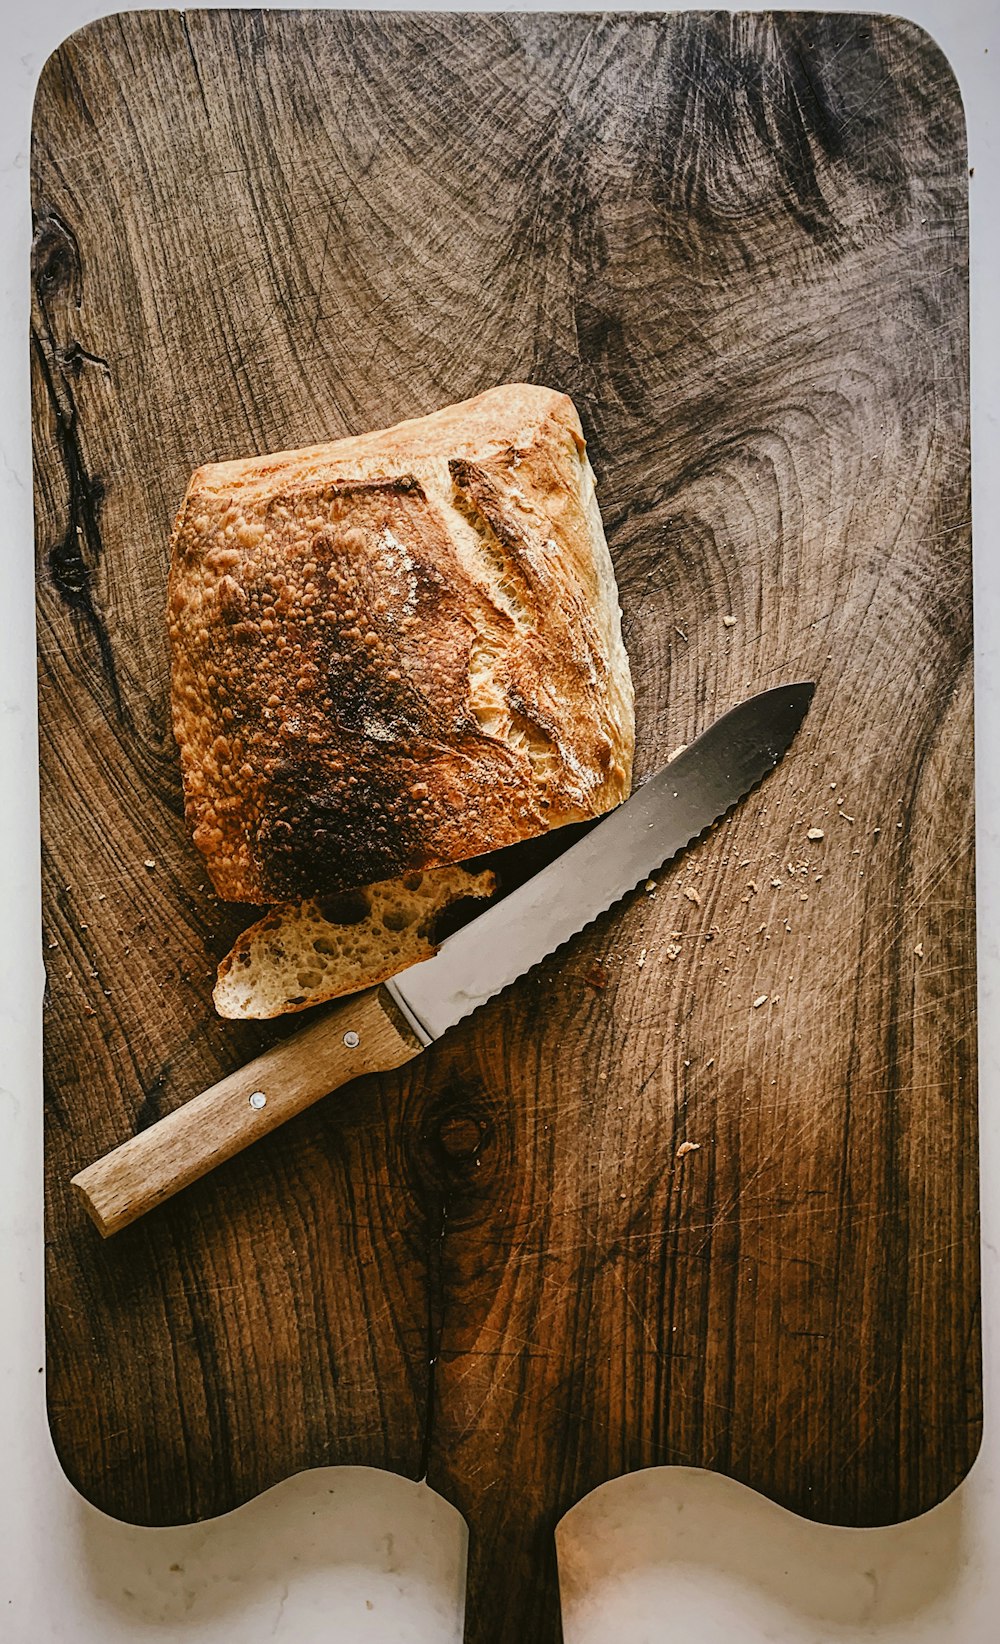 bread beside knife on chopping board